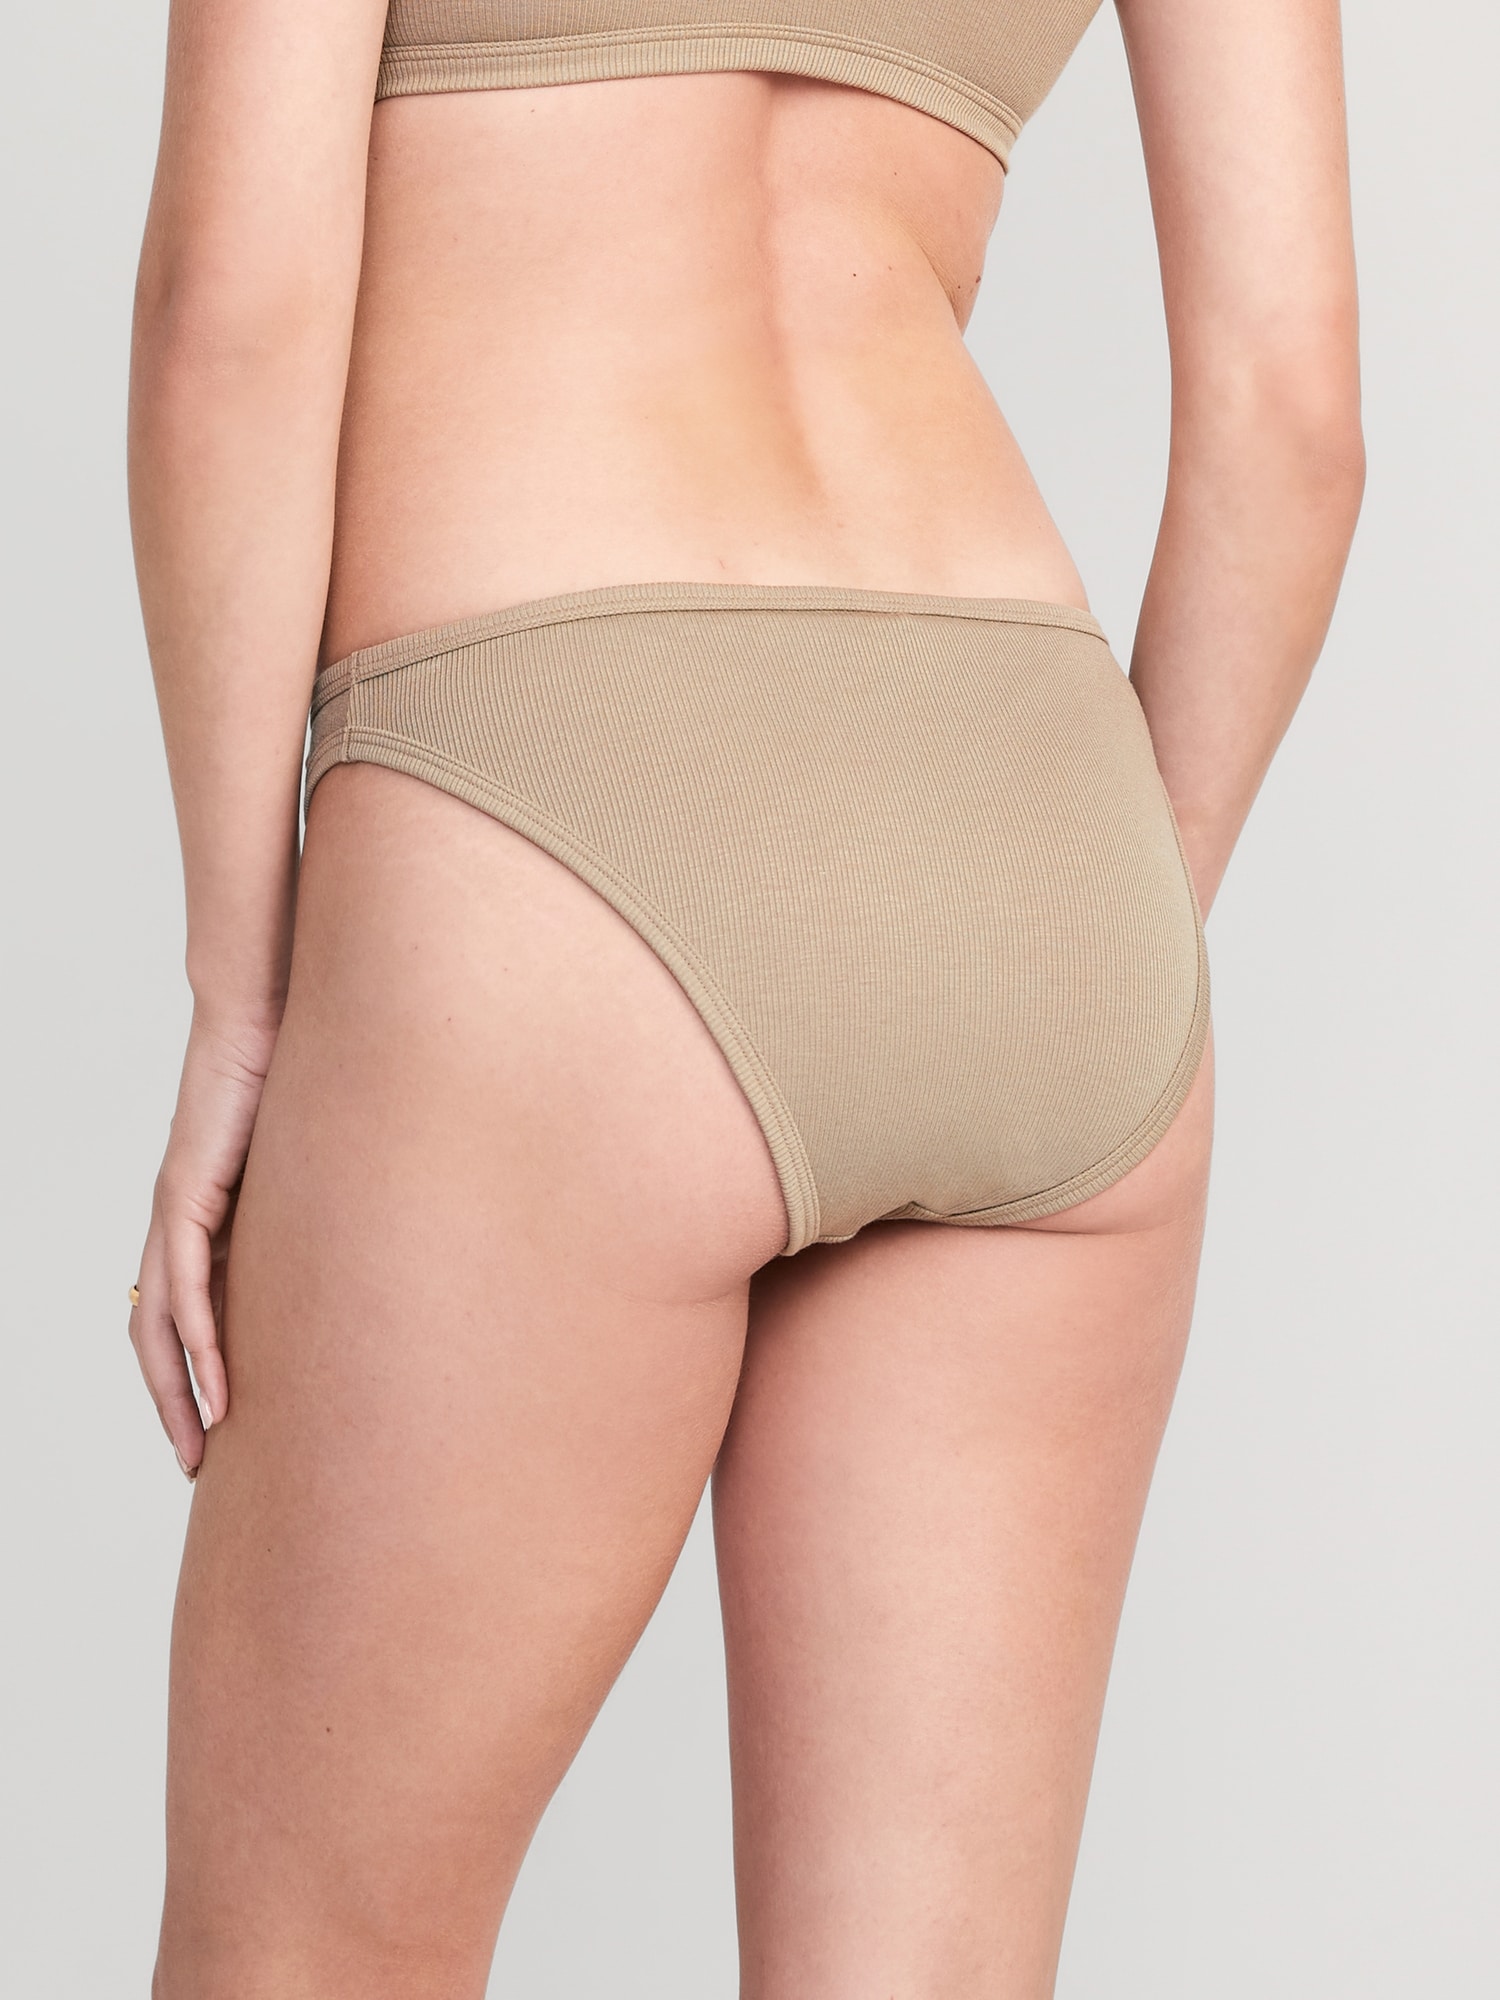 High-Waisted French-Cut Rib-Knit Bikini Underwear For Women, 44% OFF